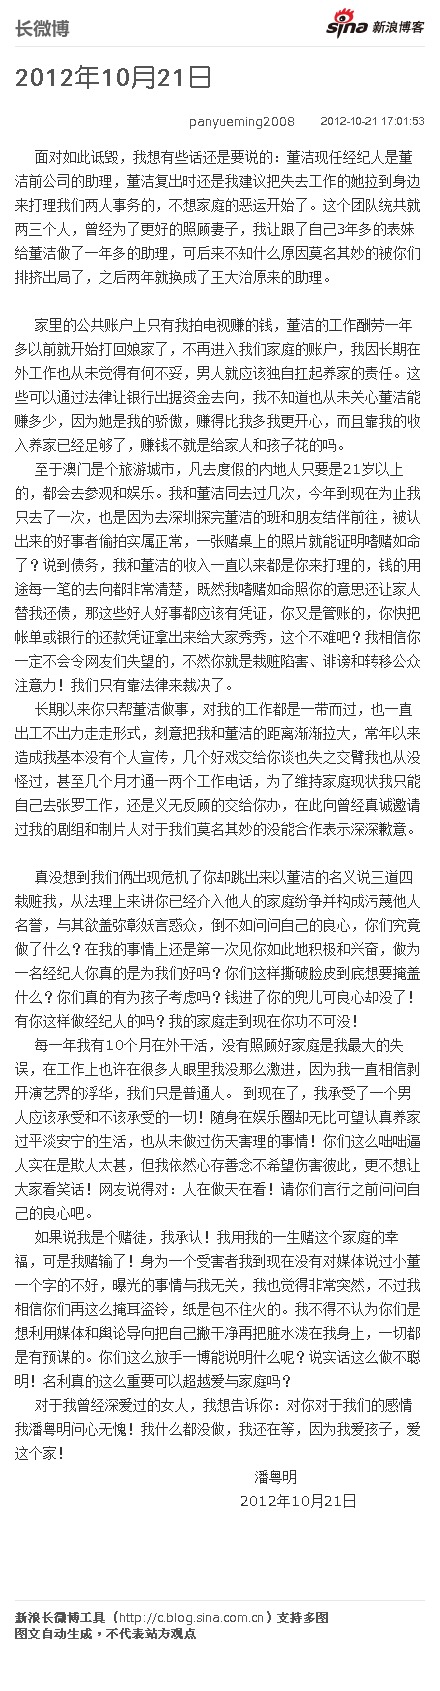 潘粤明否认嗜赌成性致分手，将起诉董洁团队（图）娱乐明星